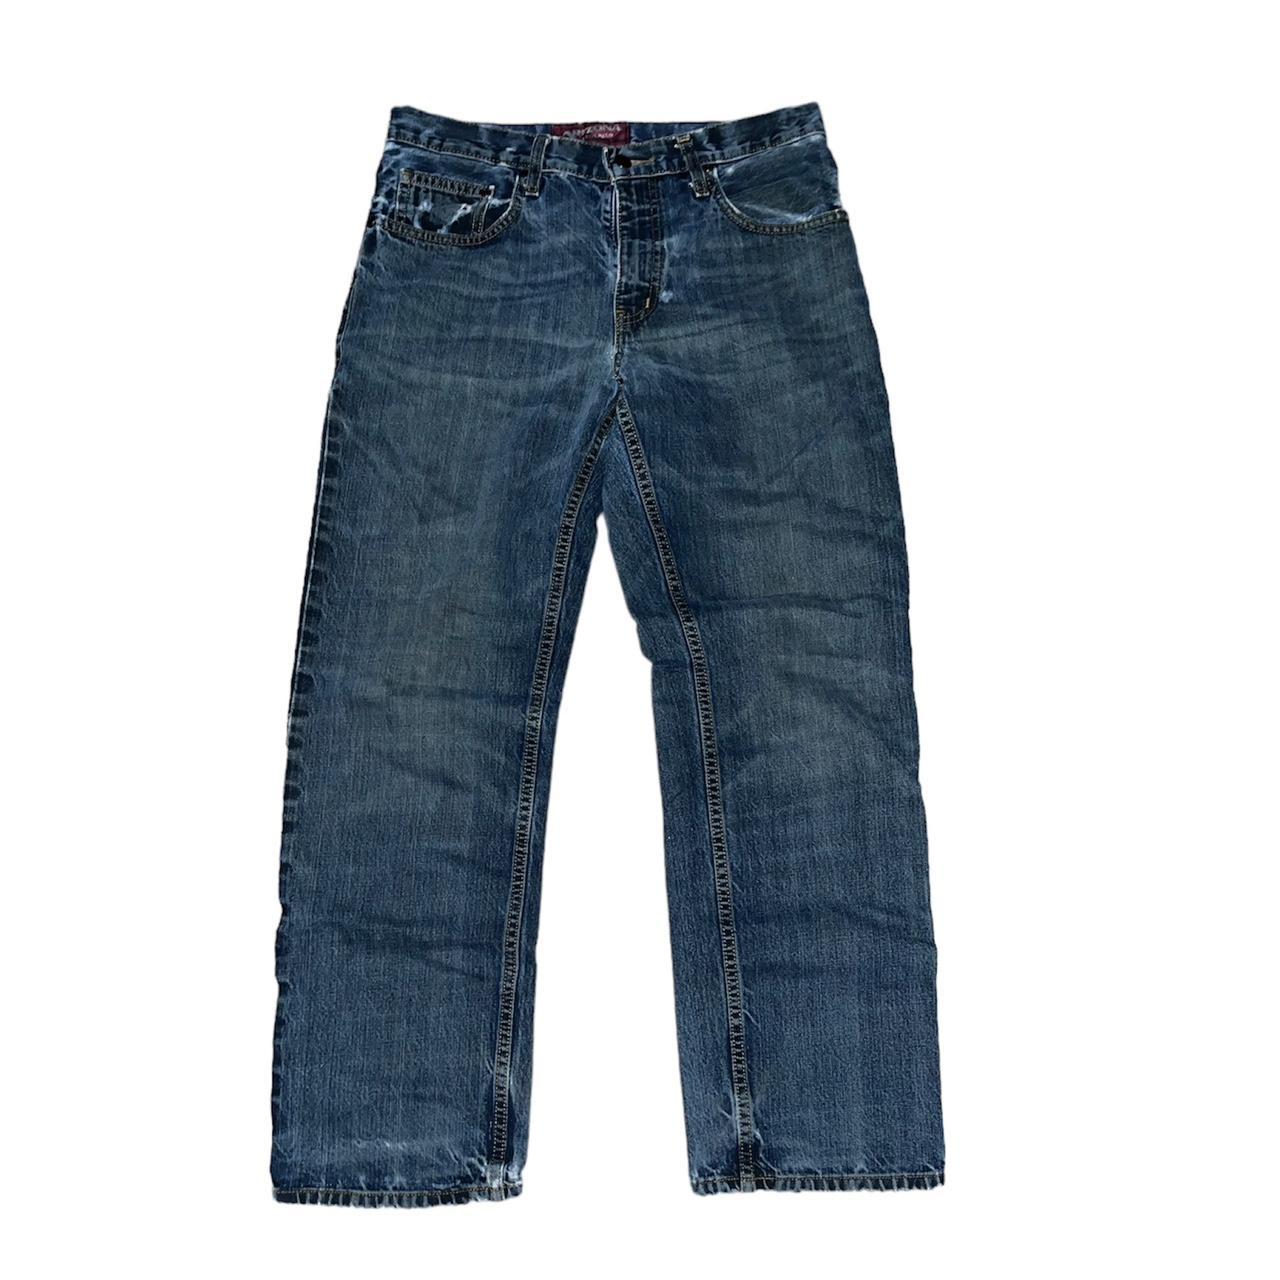 Arizona straight leg baggy jeans 31x30 W 16in L 38.5in - Depop